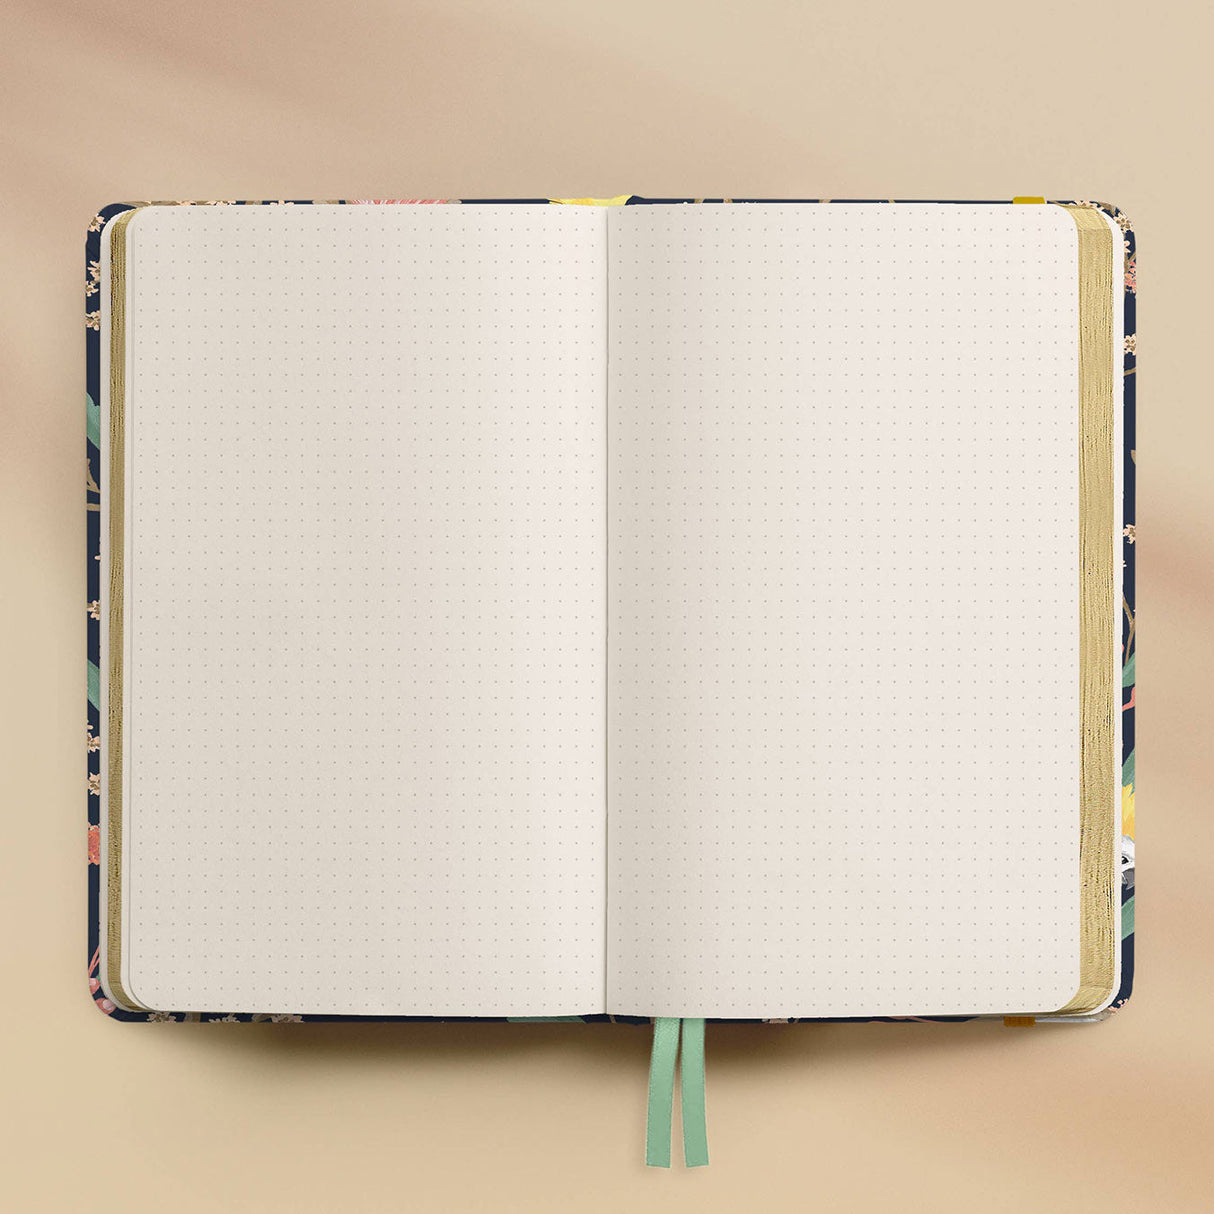 dot grid notebook